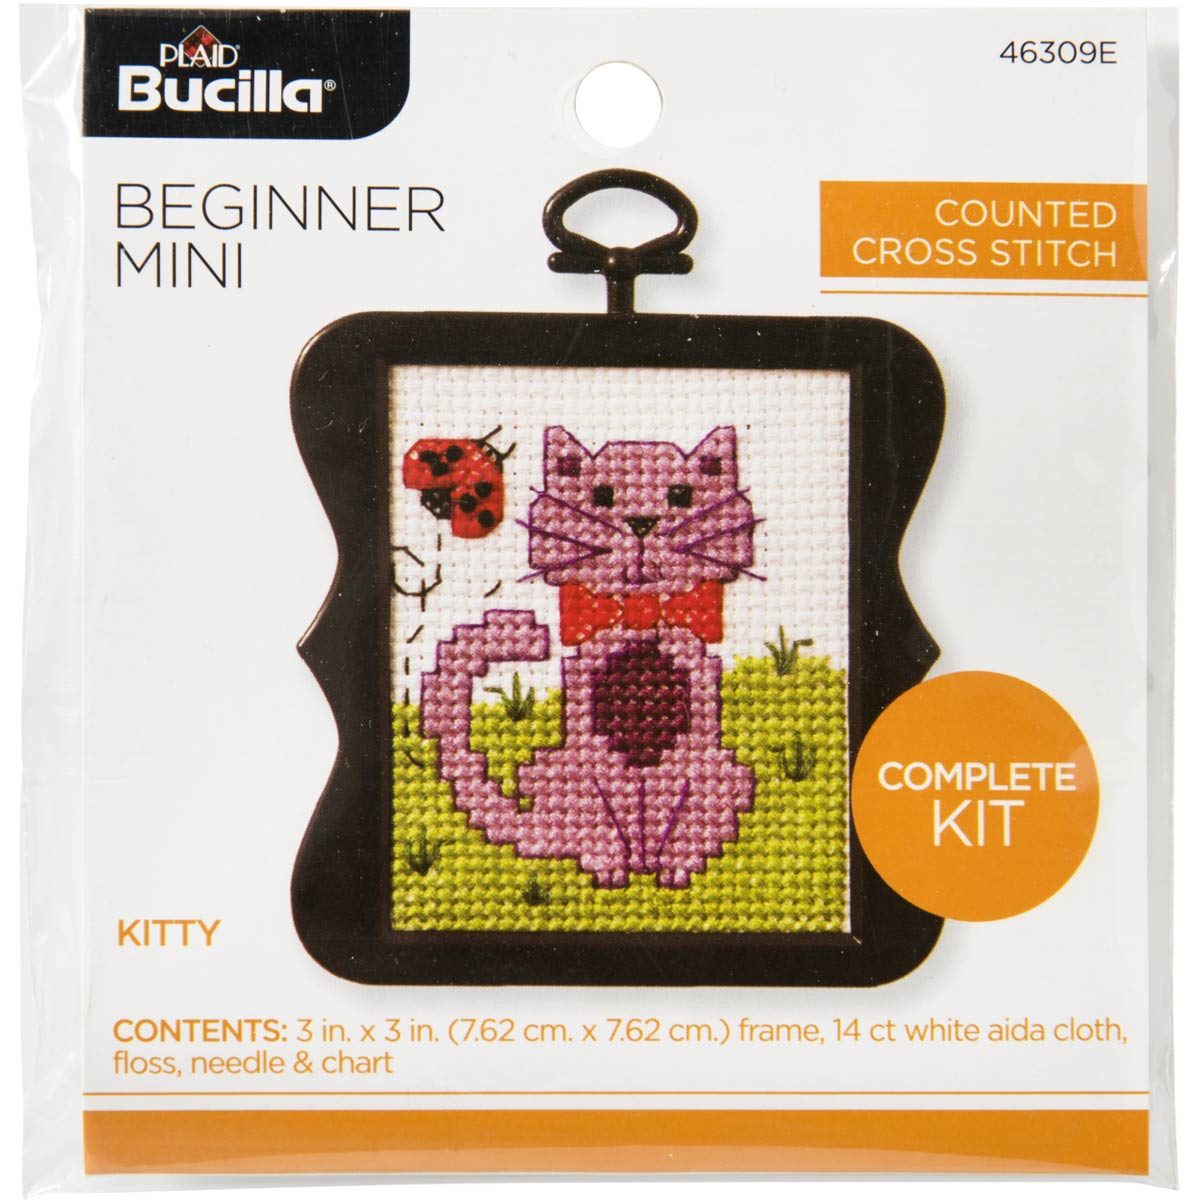 Beginner Kitty Cross Stitch Mini Kit